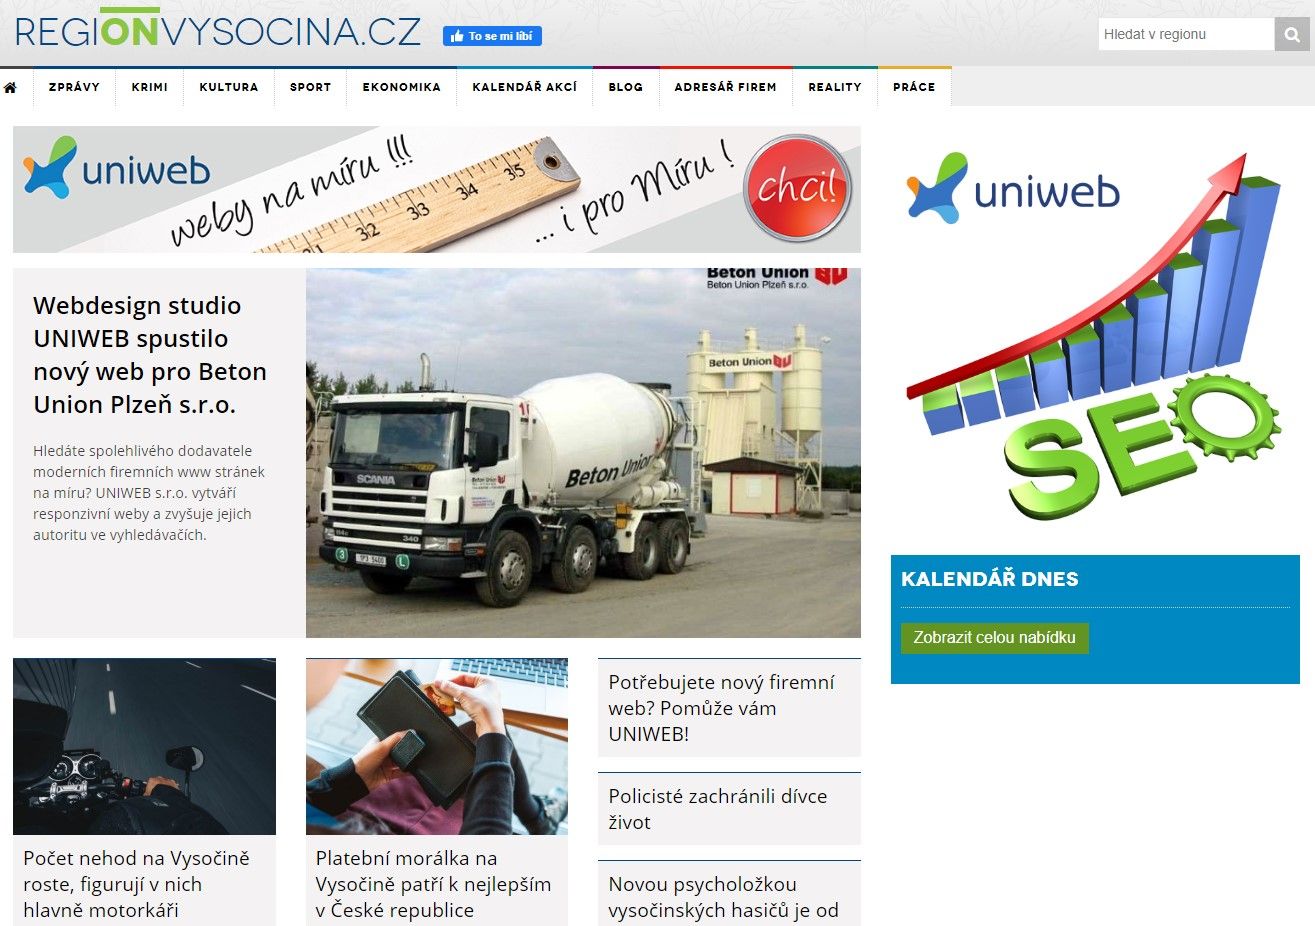 REGIONVYSOCINA.cz - online deník pro Kraj Vysočina